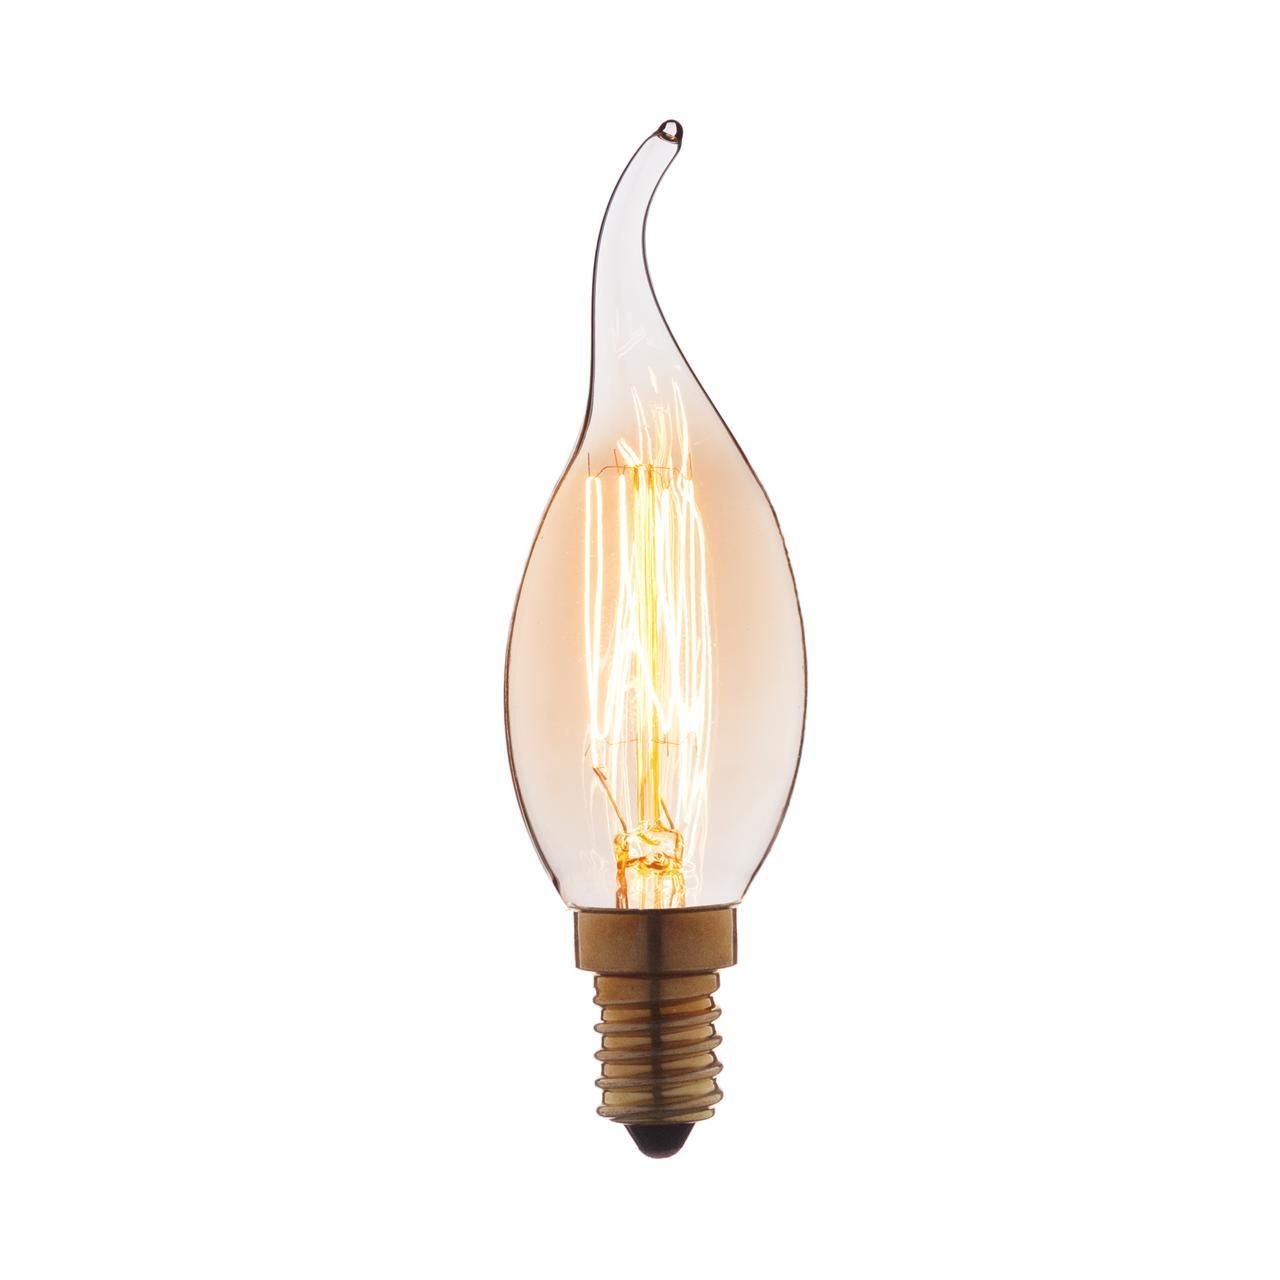 Ретро лампа Эдисона (Свеча на ветру) E14 40W 220V Edison Bulb